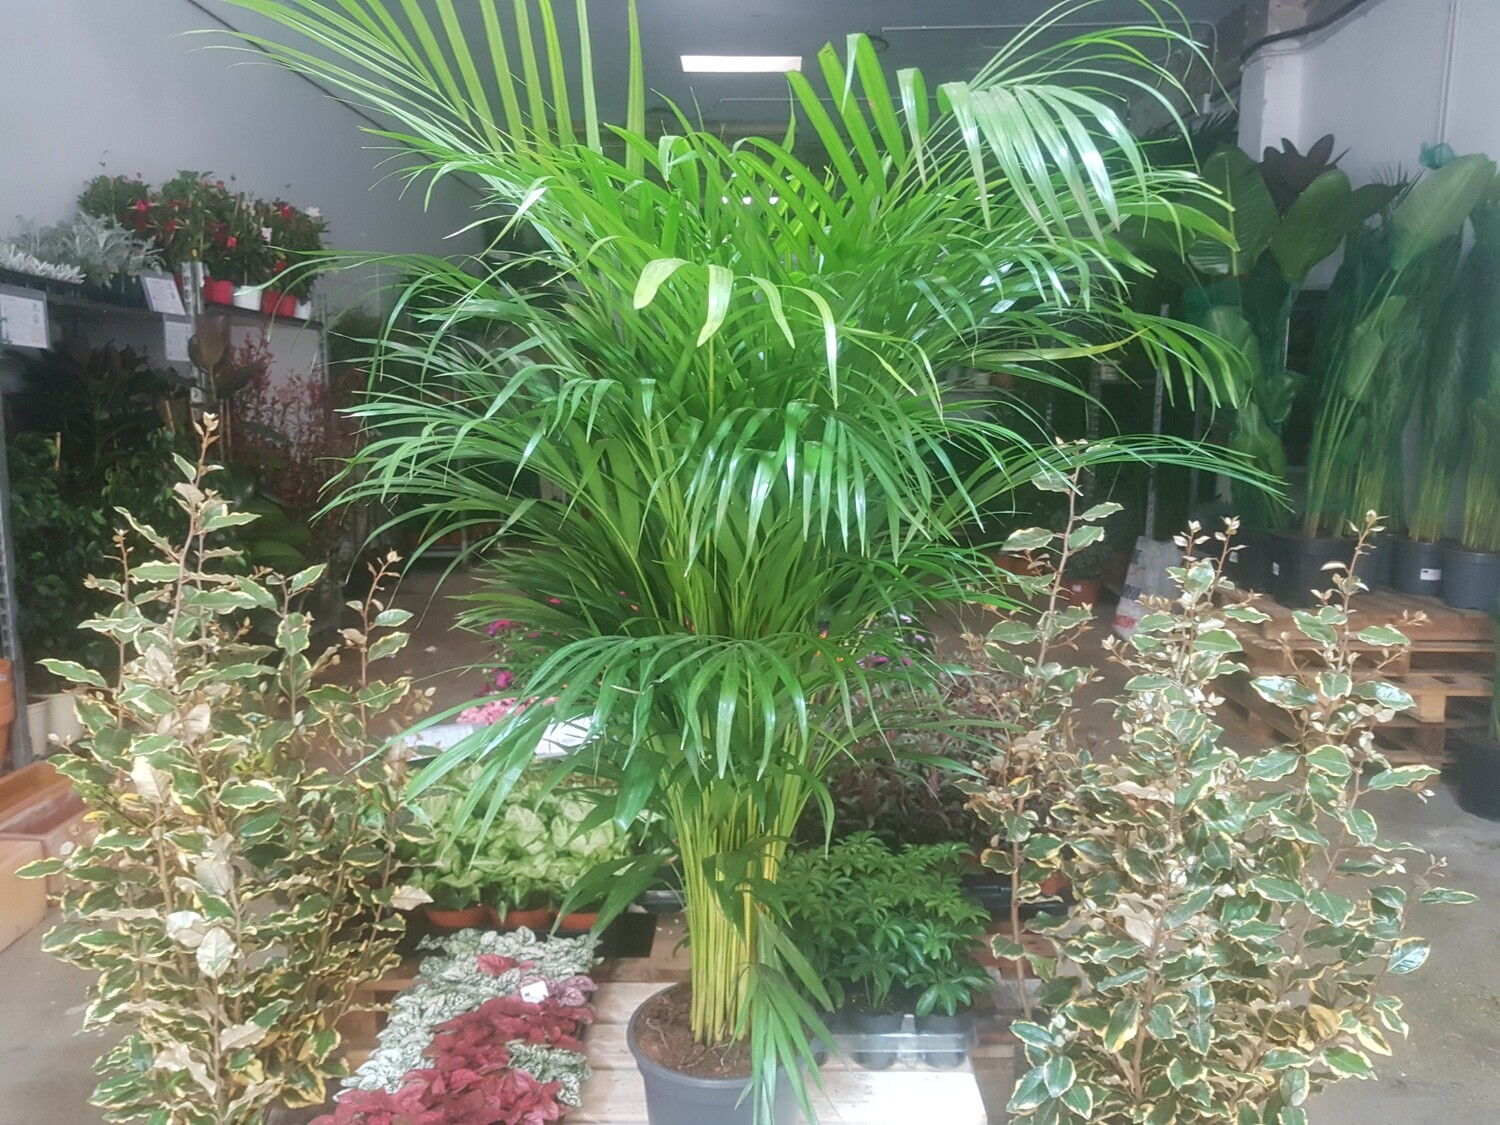 "AmaPlant Areca" Palmera Bambu, una palmera muy popular y decorativa para llenar de calidez y frescura cualquier lugar 160 cm (calma) - Interior o exterior con sombra - ENVIO INCLUIDO BARCELONA CIUDAD